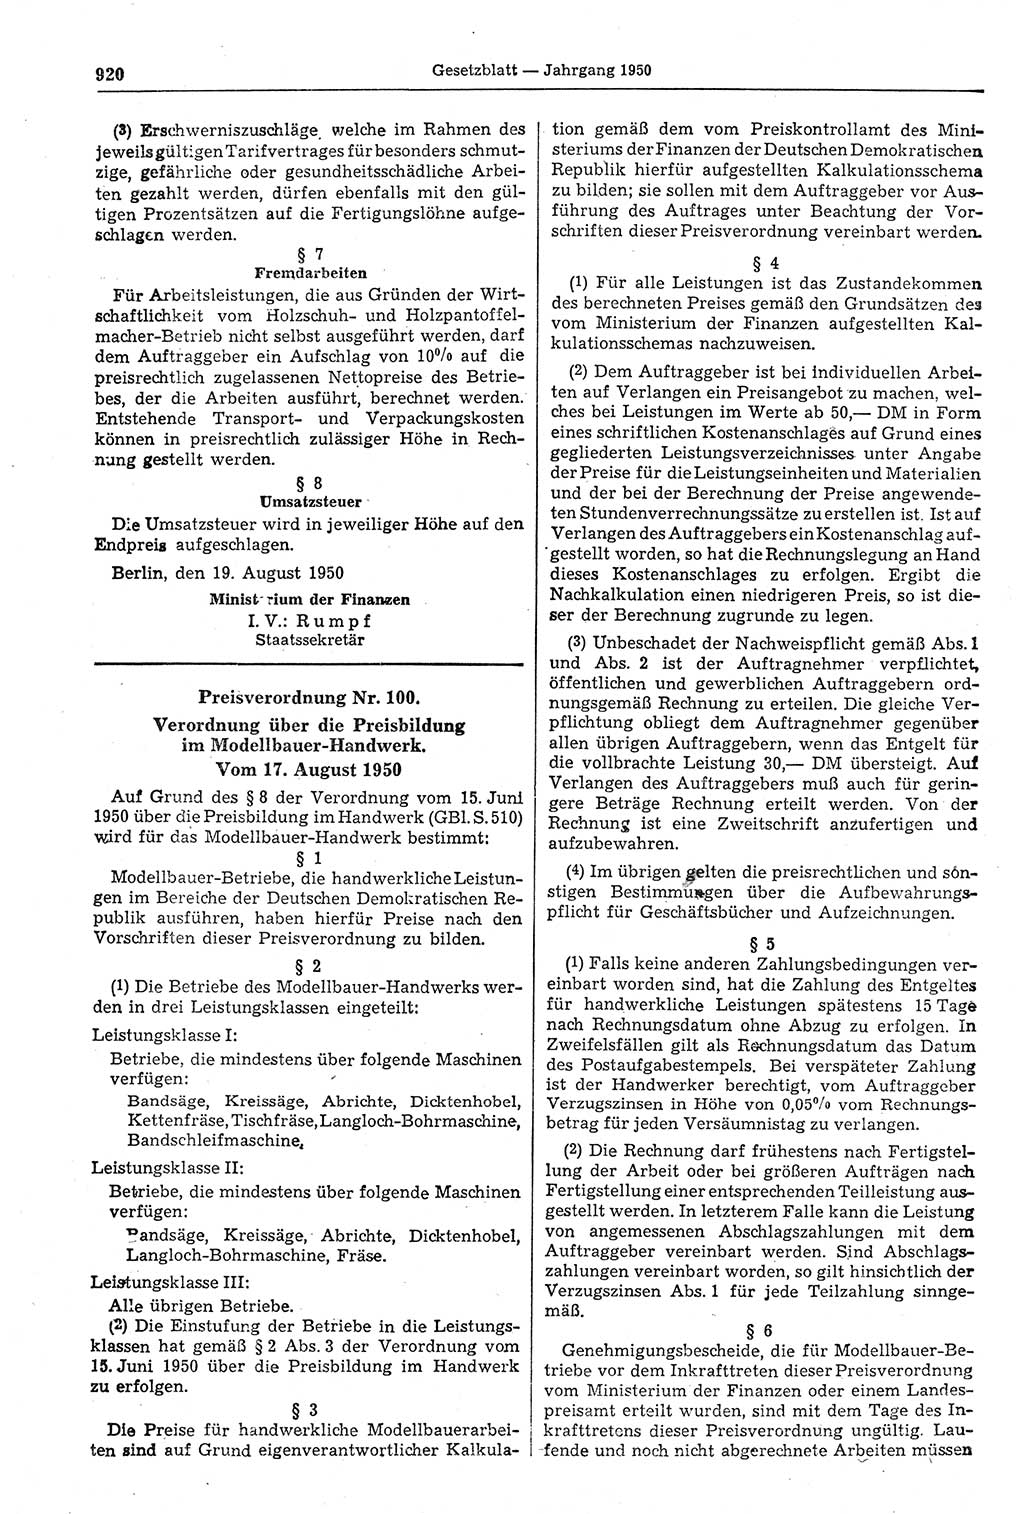 Gesetzblatt (GBl.) der Deutschen Demokratischen Republik (DDR) 1950, Seite 920 (GBl. DDR 1950, S. 920)